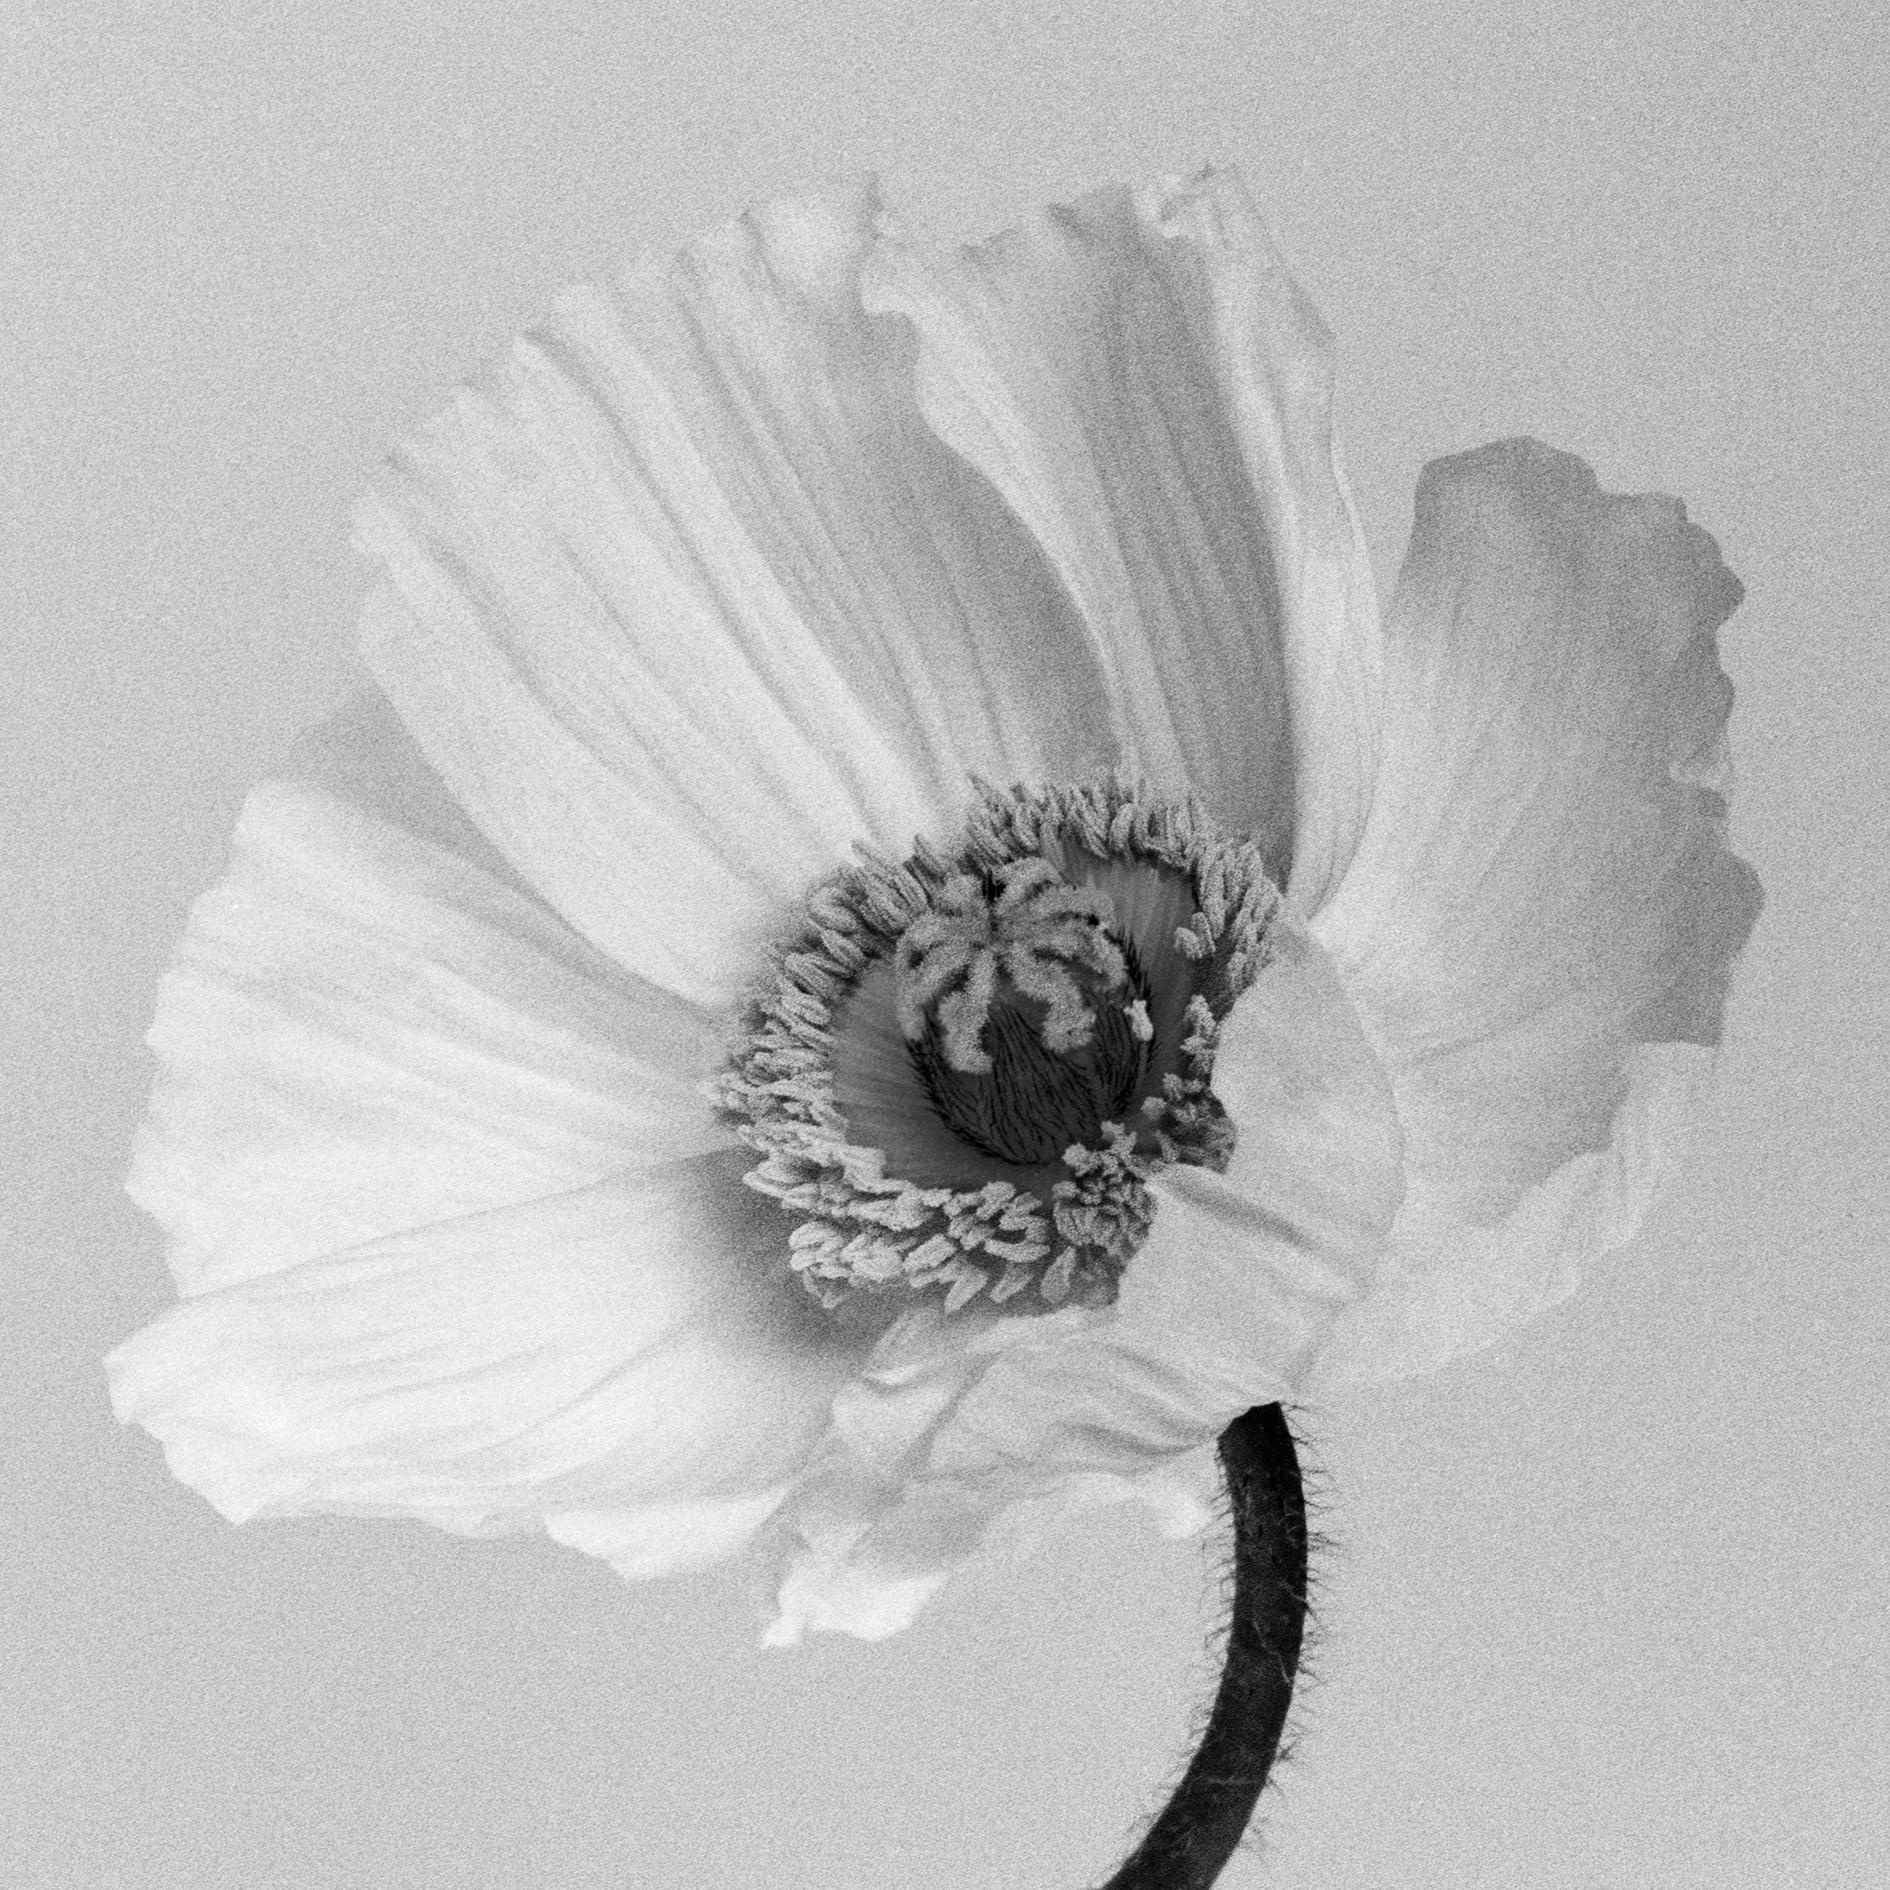 Coquelicot n°2 - Photographie florale analogique en noir et blanc, édition de 20 exemplaires